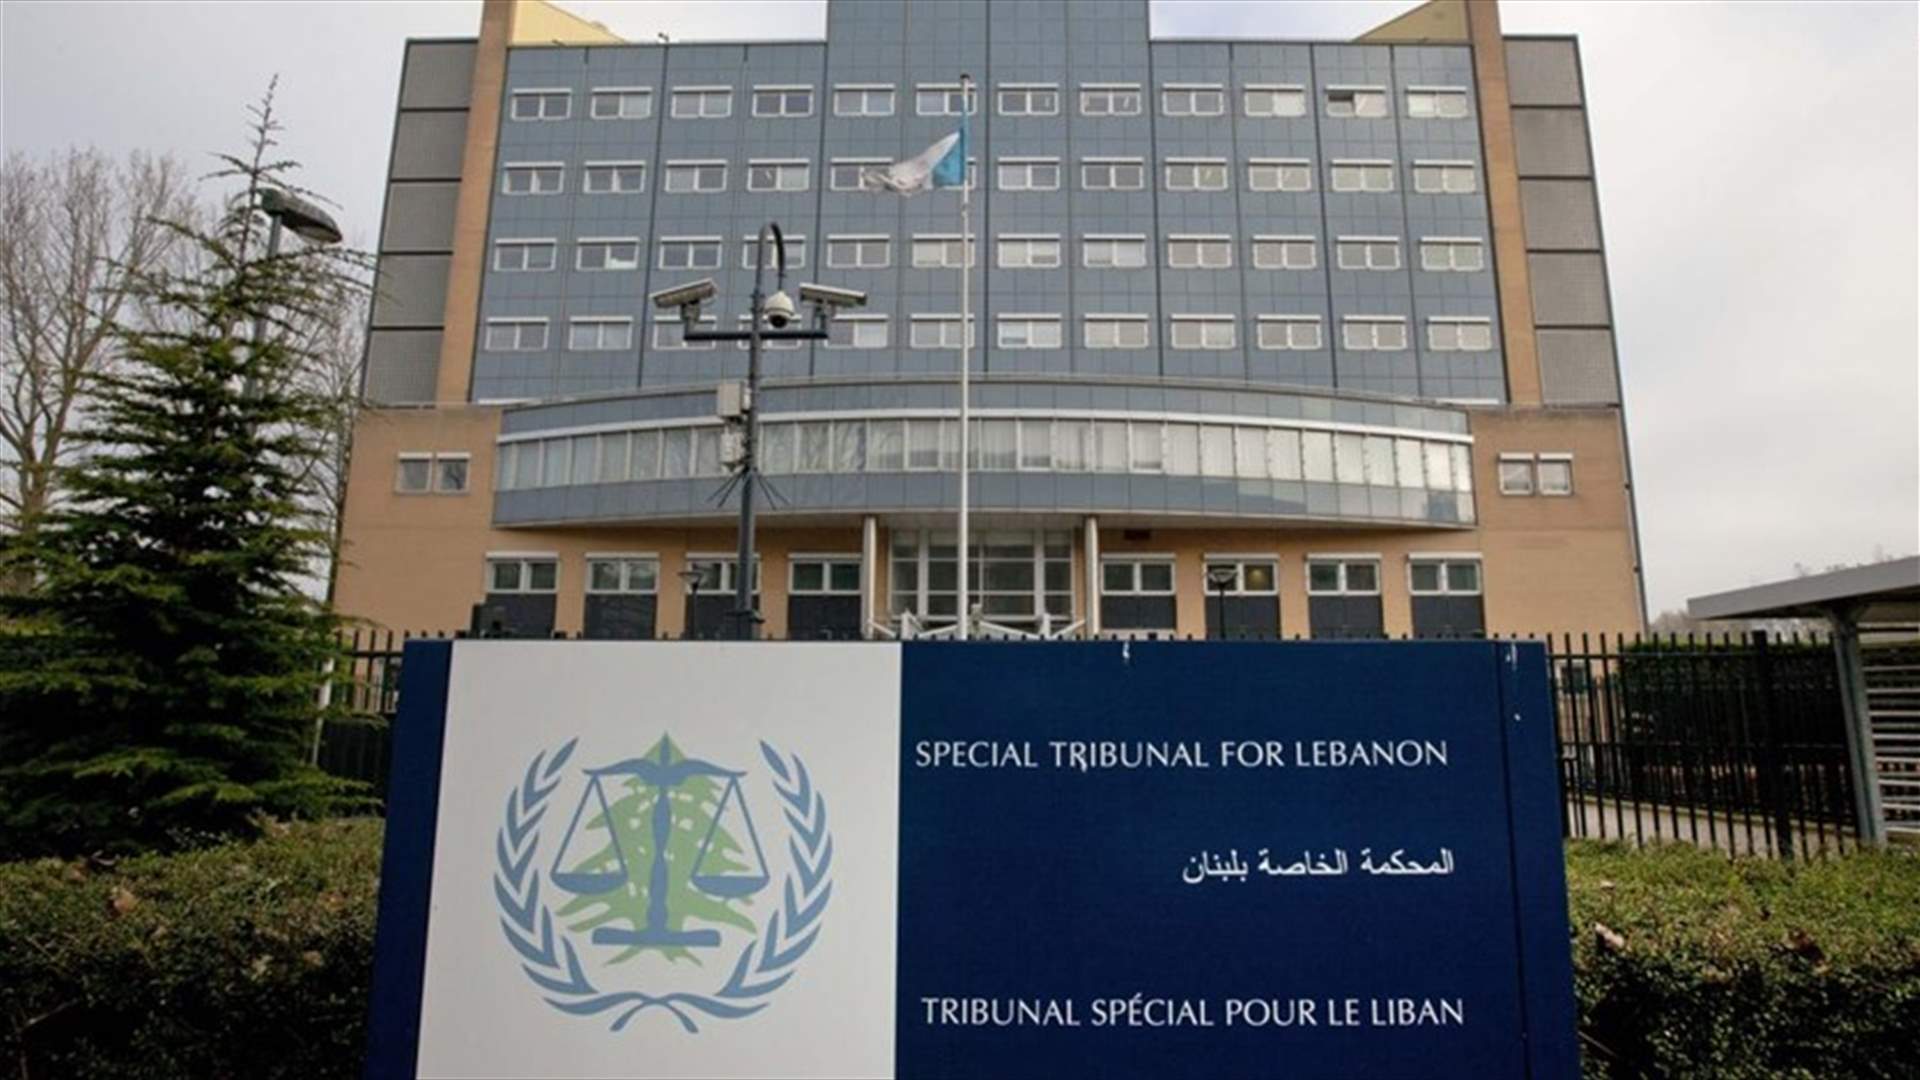 كم بلغت المساهمة التي سددها لبنان في المحكمة الدولية؟